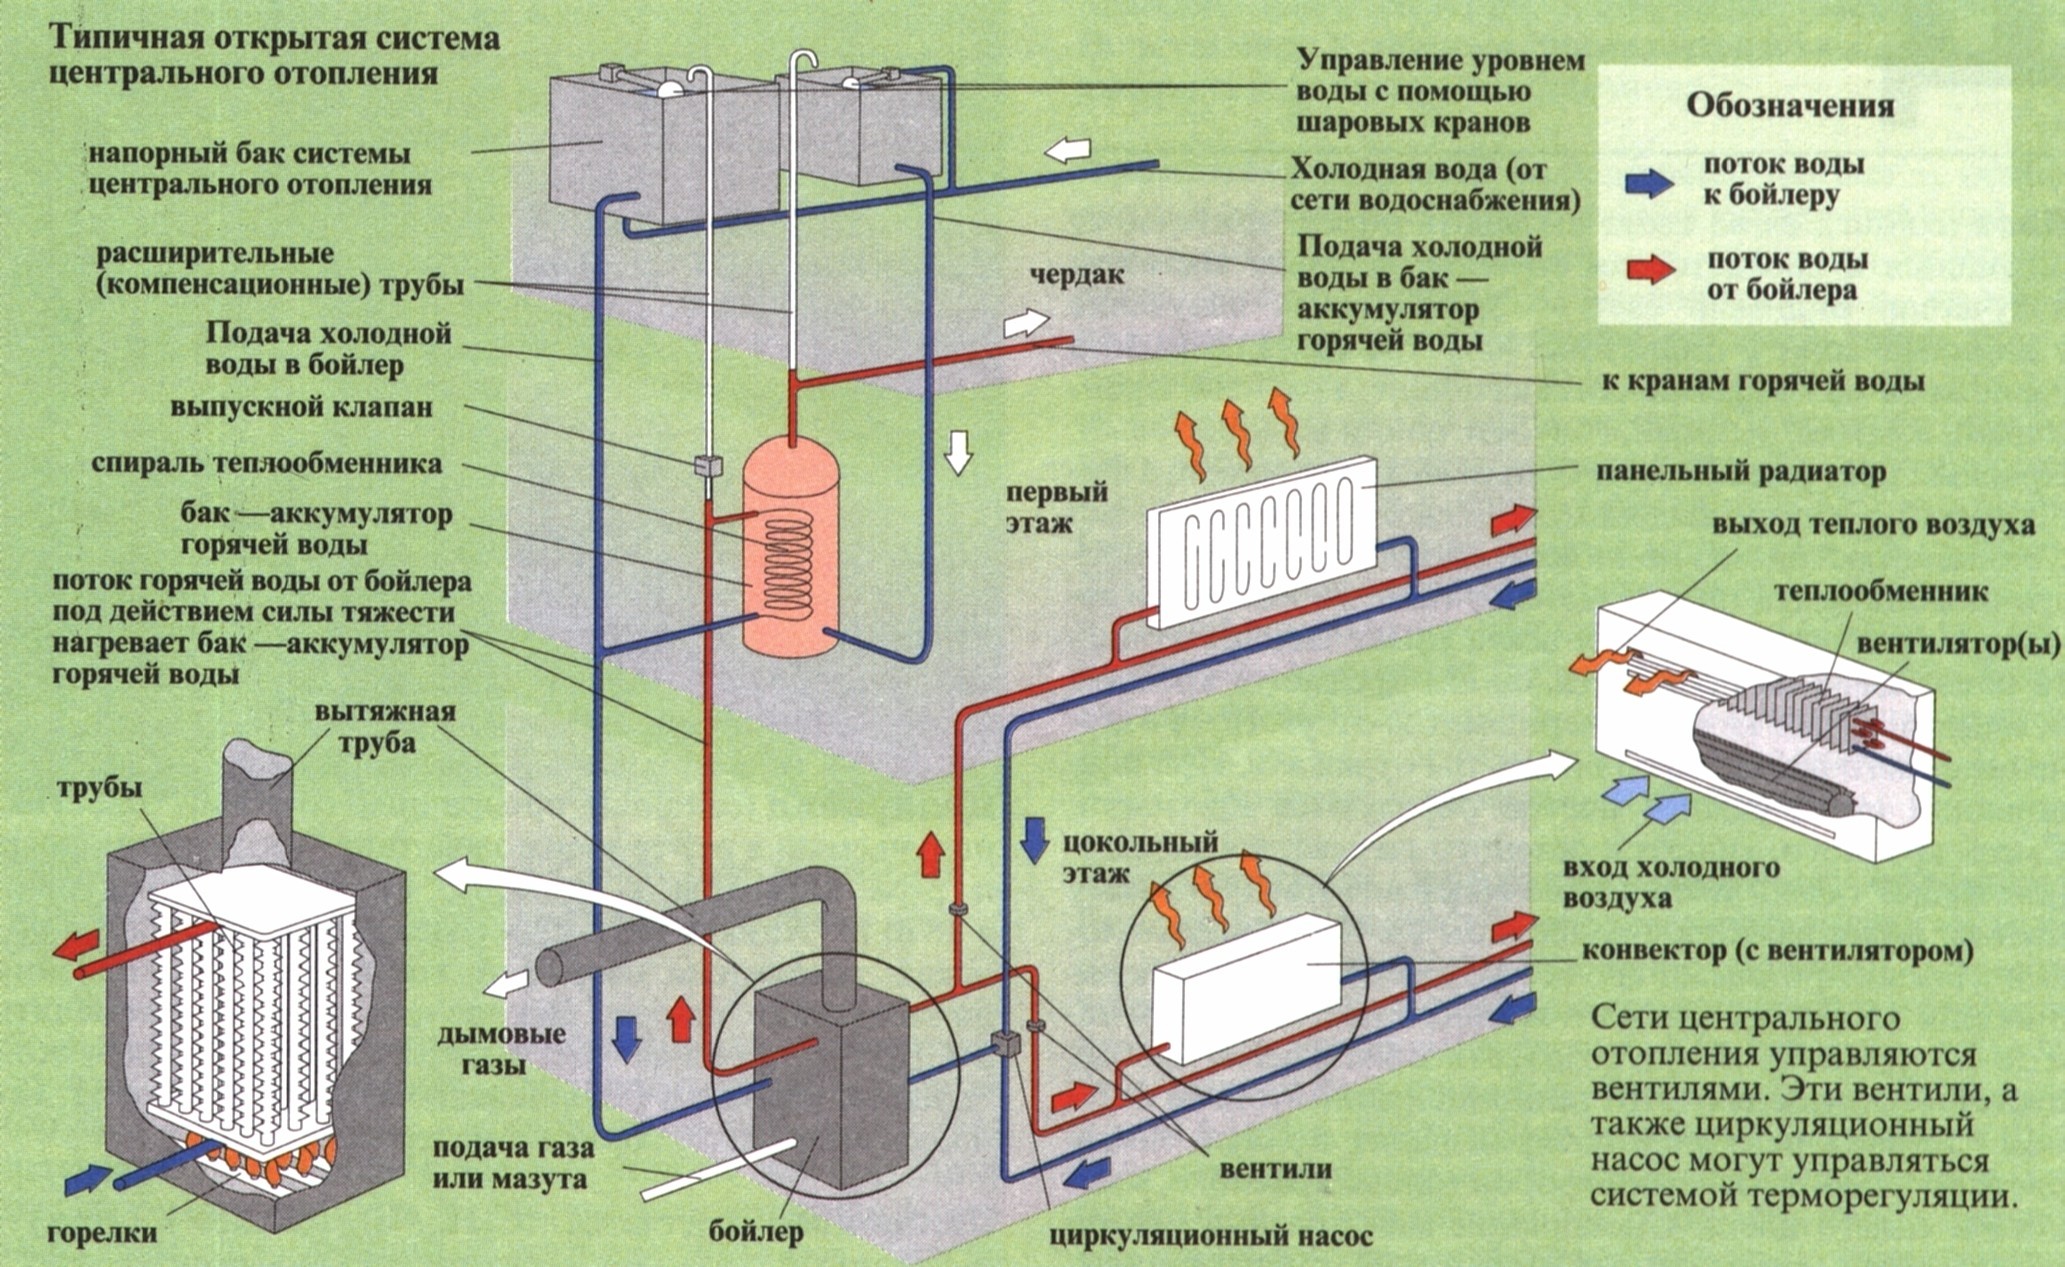 Получение горячей воды. Централизованная система отопления схема. Центральная система отопления схема. Централизованное отопление схема. Система парового отопление пар.